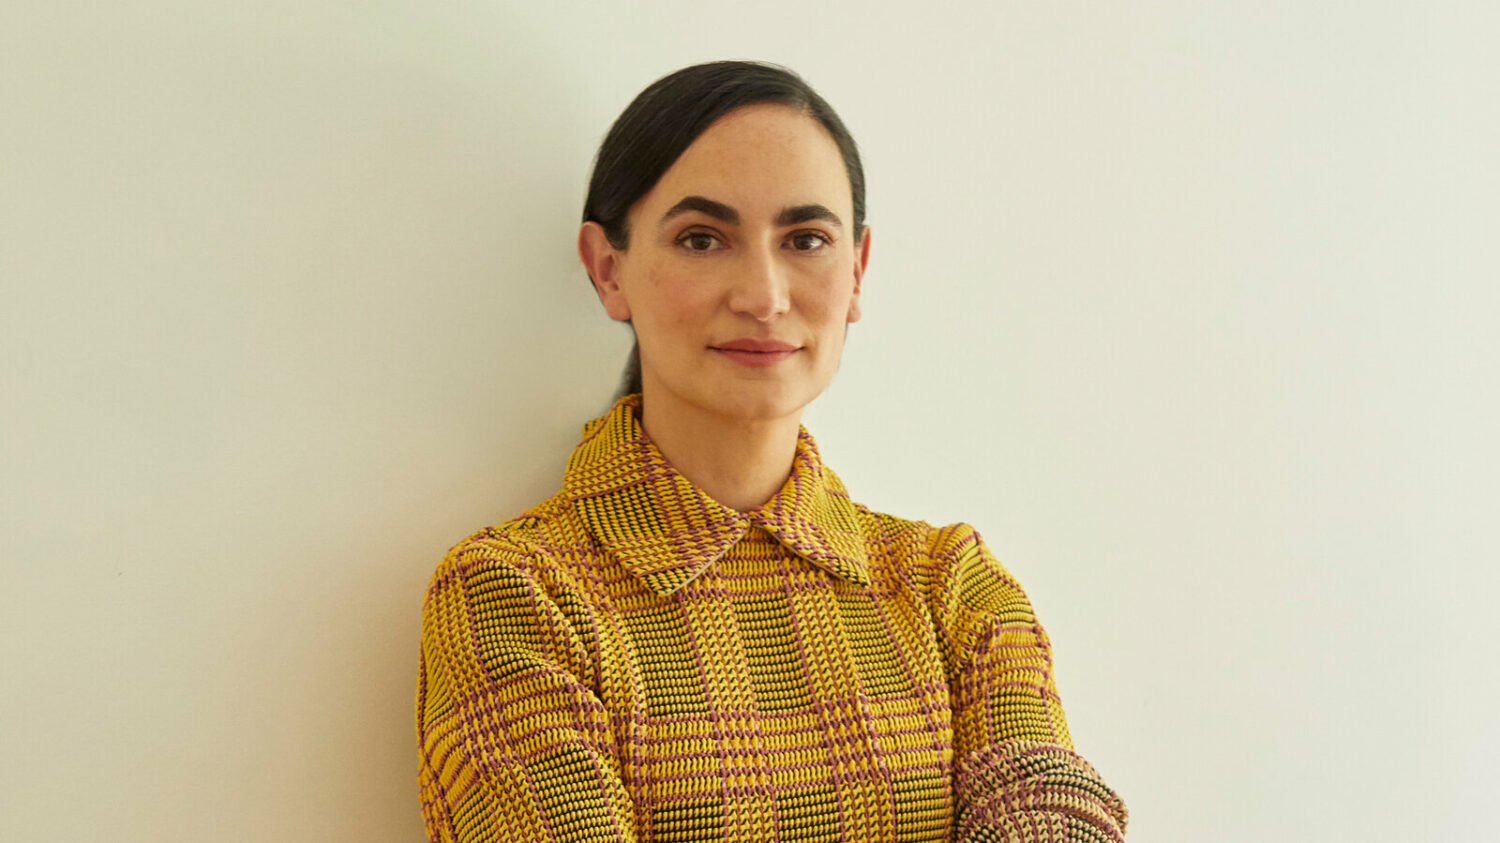 Η Frida Escobedo θα είναι η πρώτη γυναίκα αρχιτέκτων που θα σχεδιάσει πτέρυγα στο Met